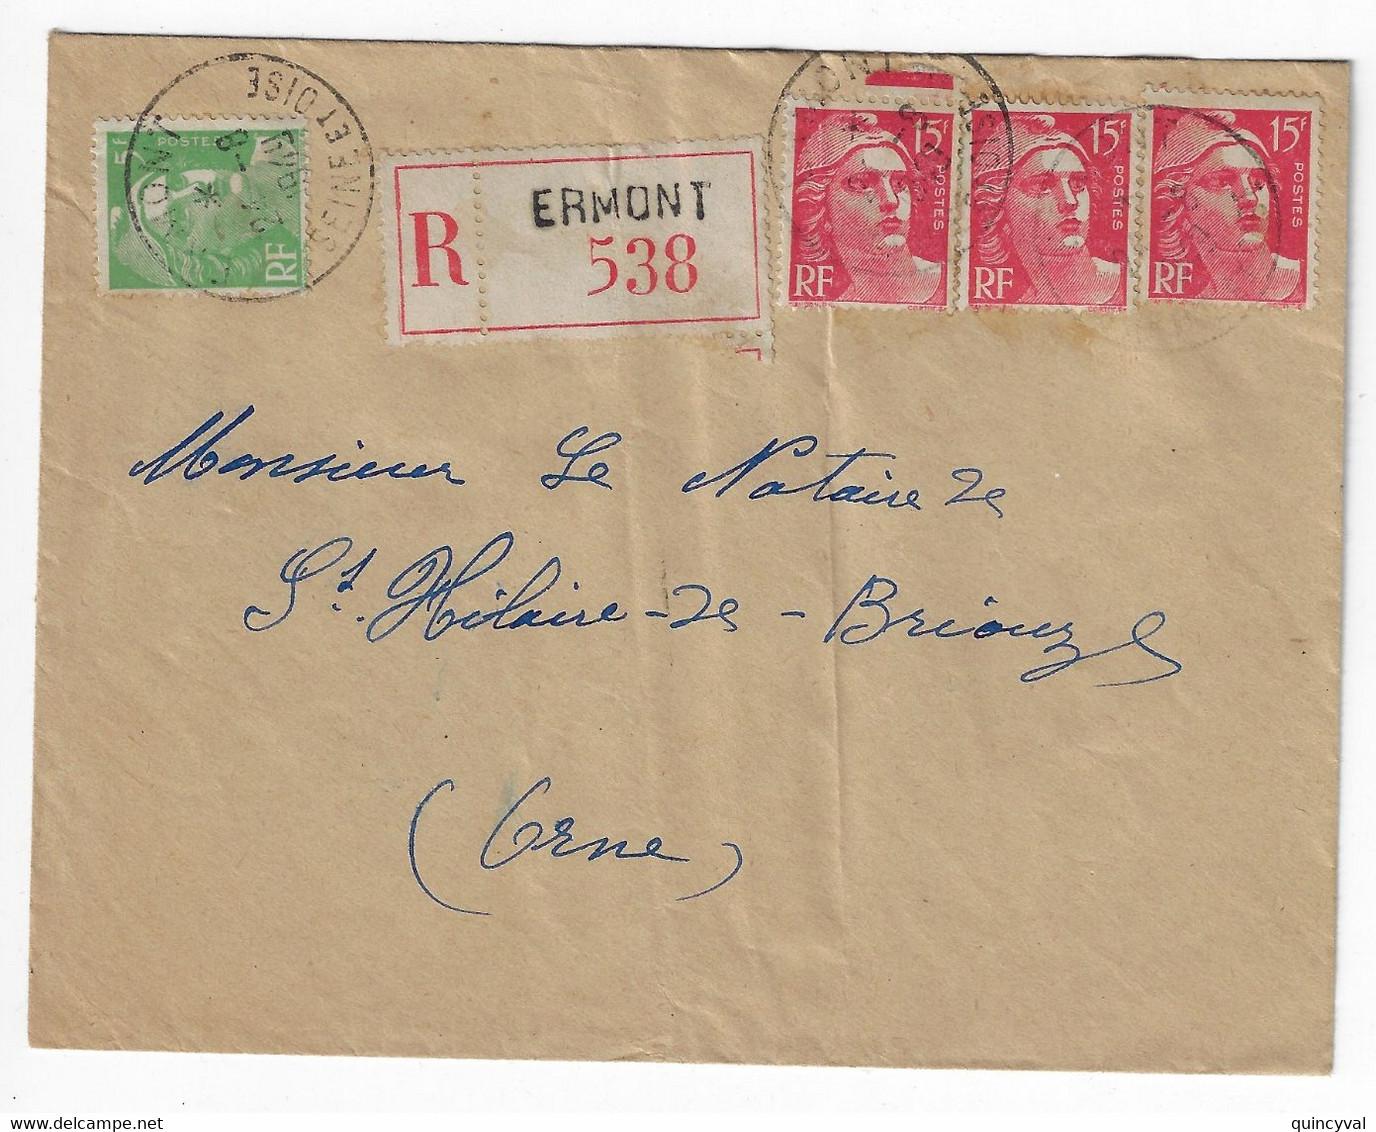 ERMONT Seine Et Oise Lettre Recommandée  5F Vert 15 F Gandon Etiquette Yv 813 809 Ob 24 8 1949 - Cartas & Documentos